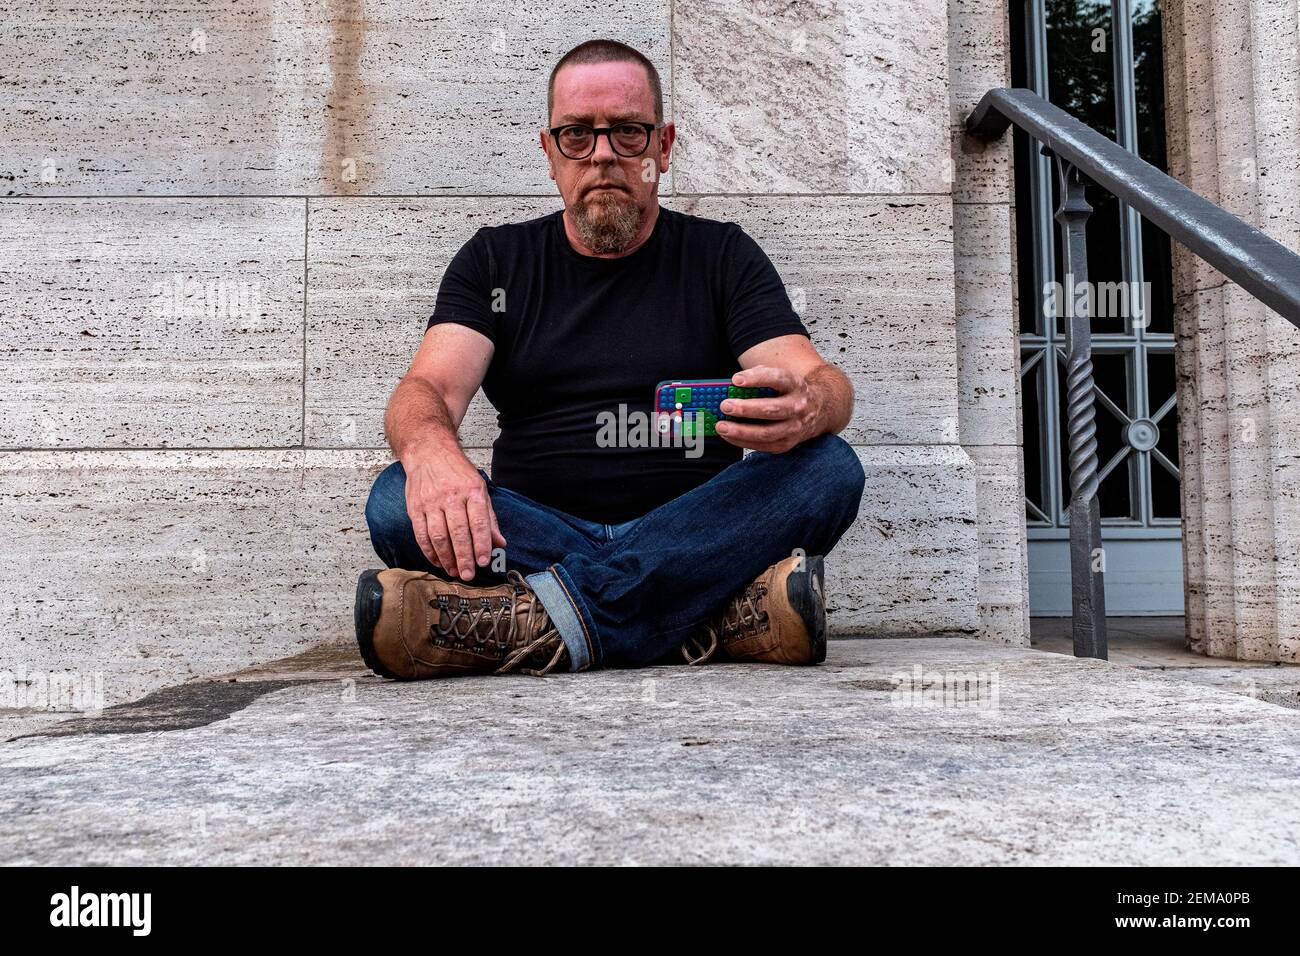 Berlin, Deutschland, Porträt eines erwachsenen, kaukasischen Mannes, der an einer grauen Wand sitzt. Stockfoto